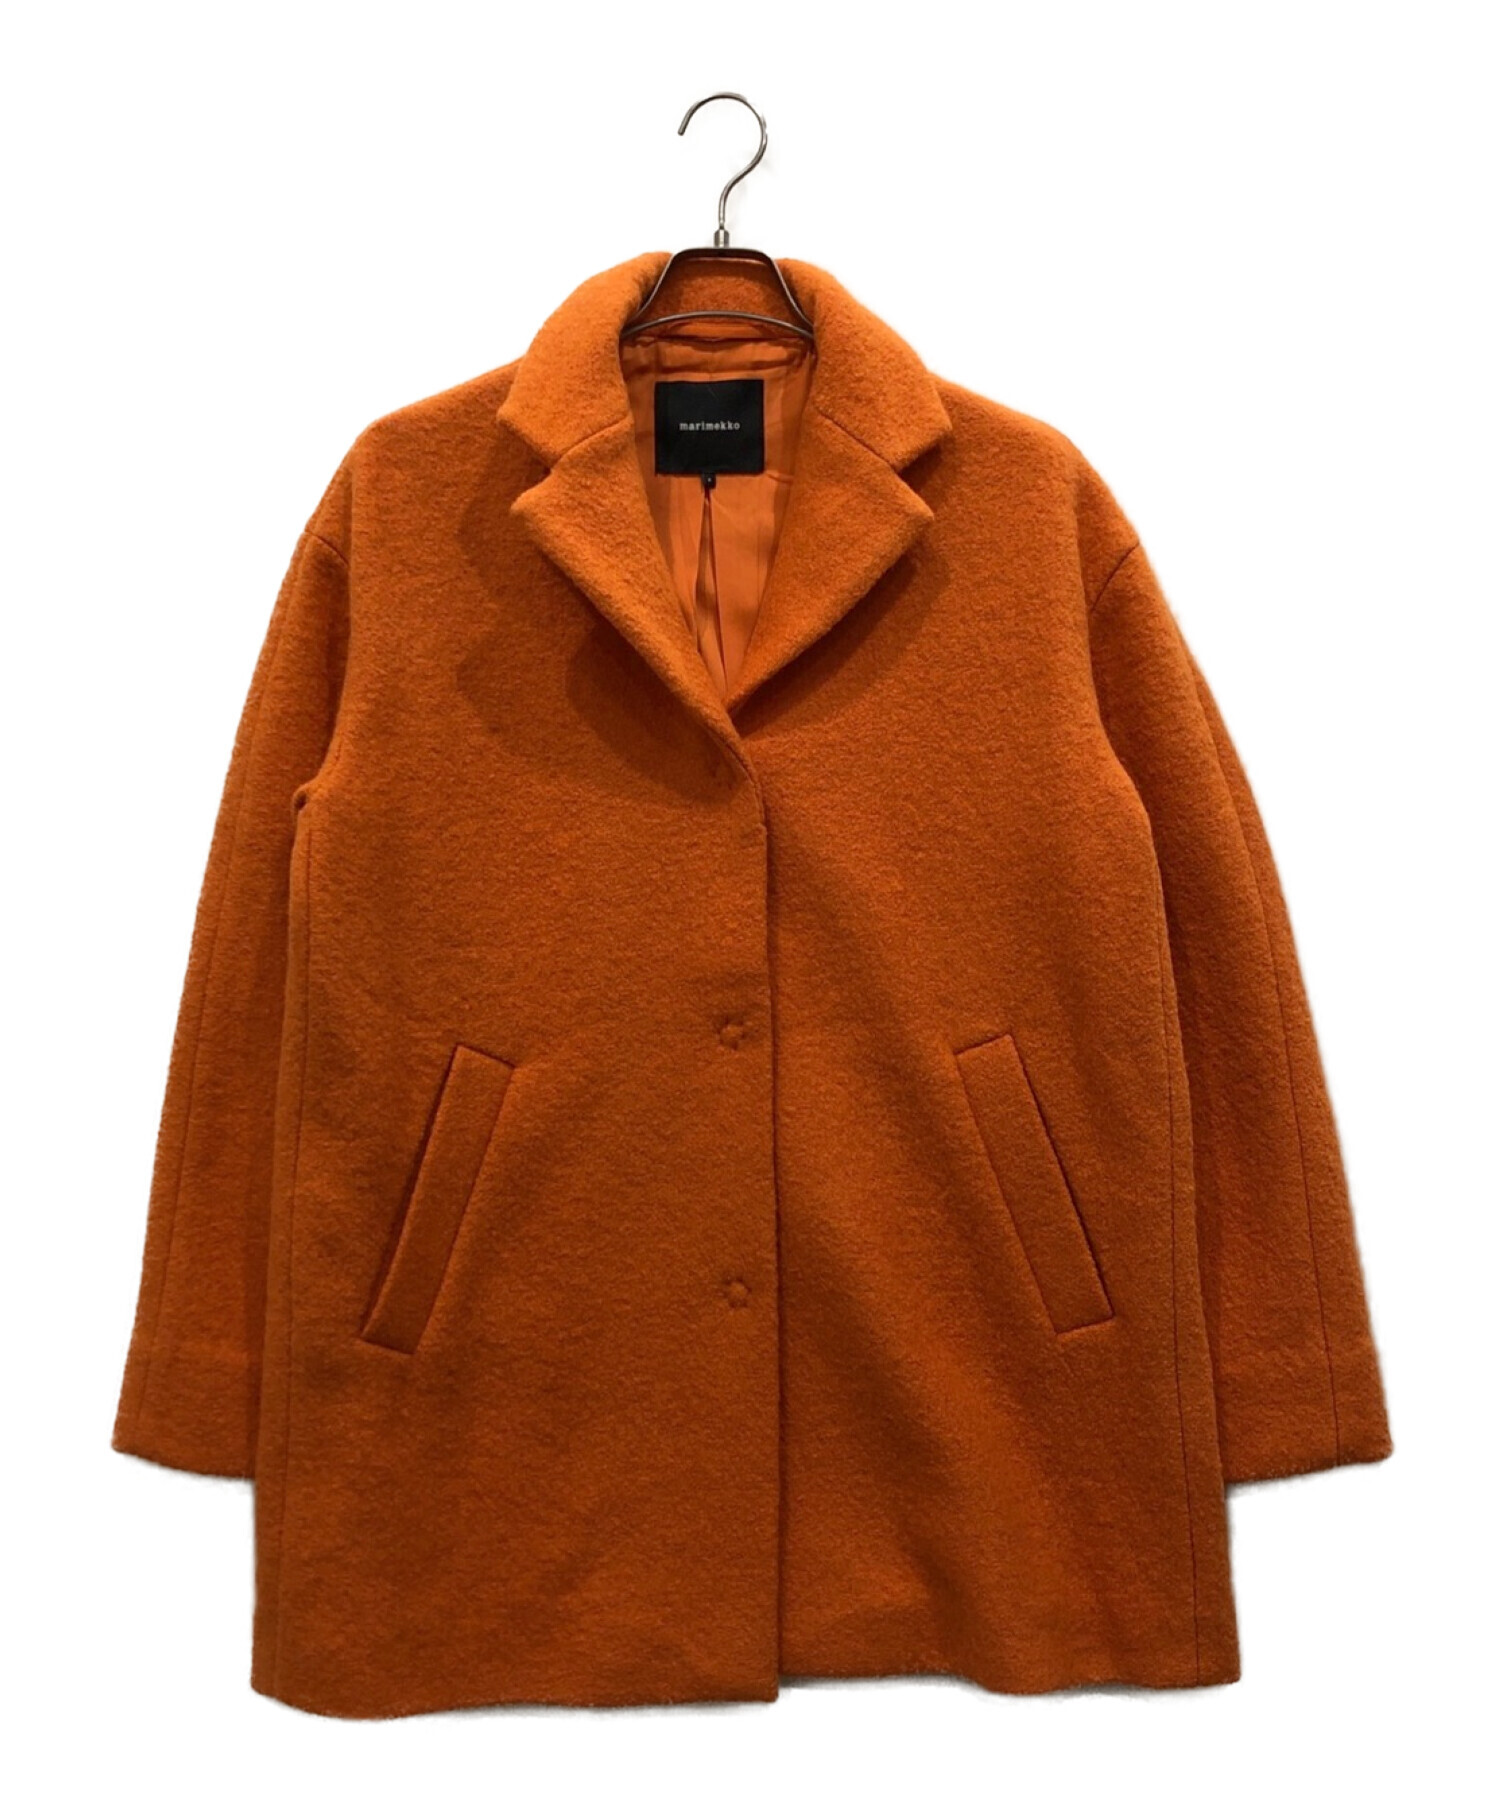 marimekko (マリメッコ) ウールコート オレンジ サイズ:S